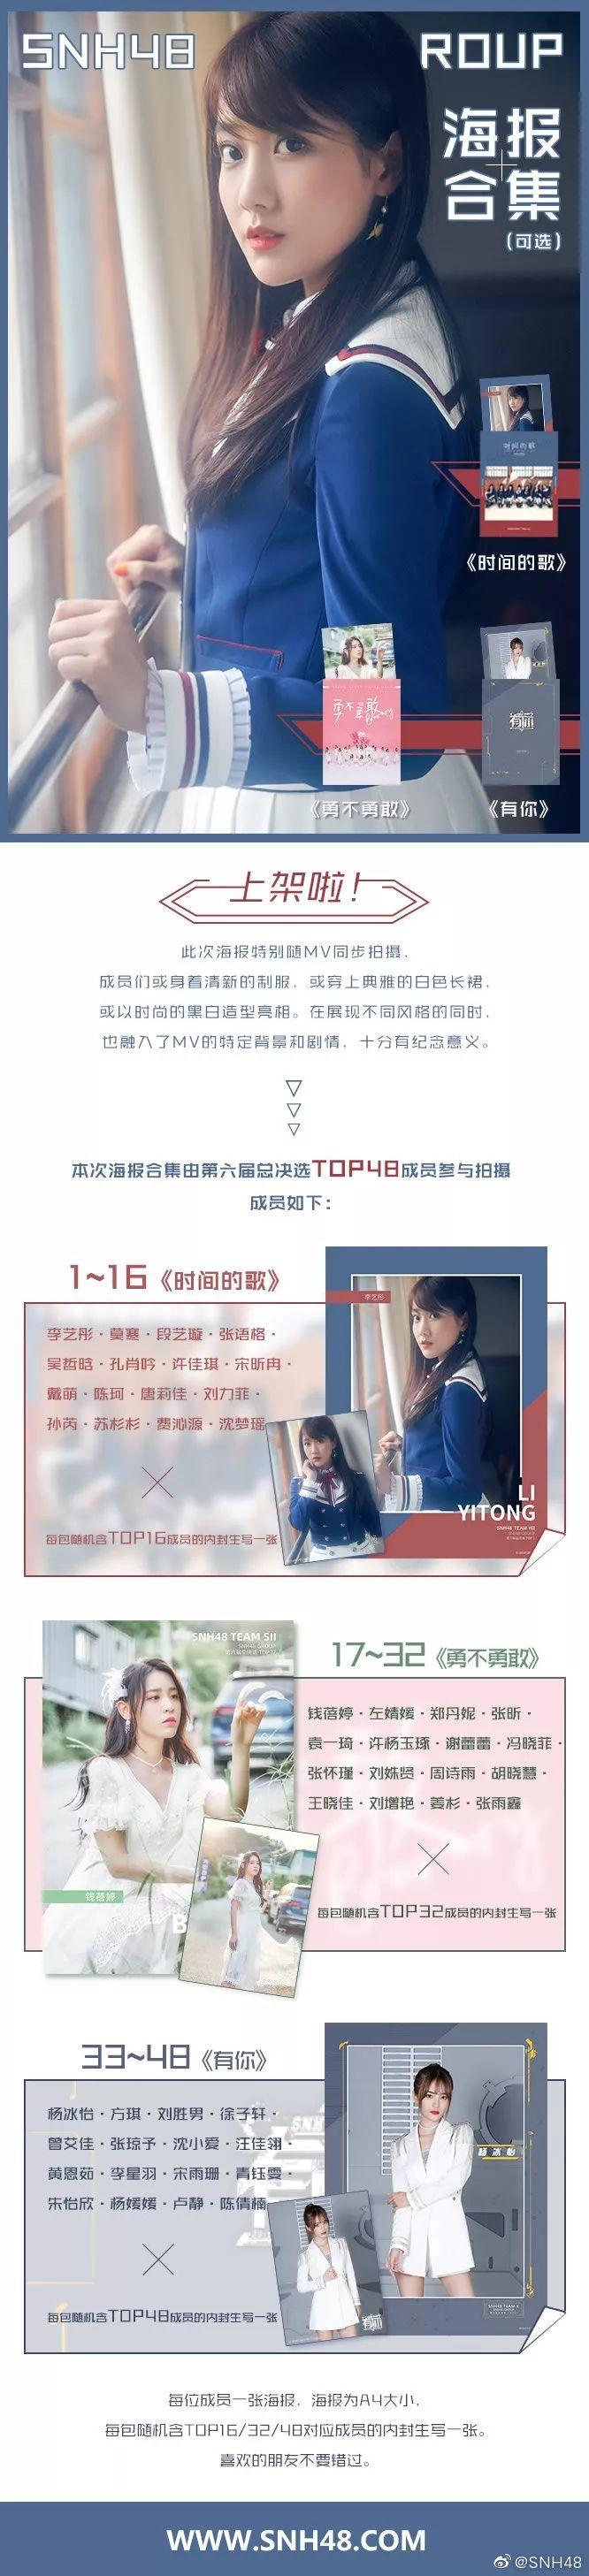 火热销售中 | SNH48 GROUP第六届总决选汇报EP《时间的歌》主题周边今日开售！